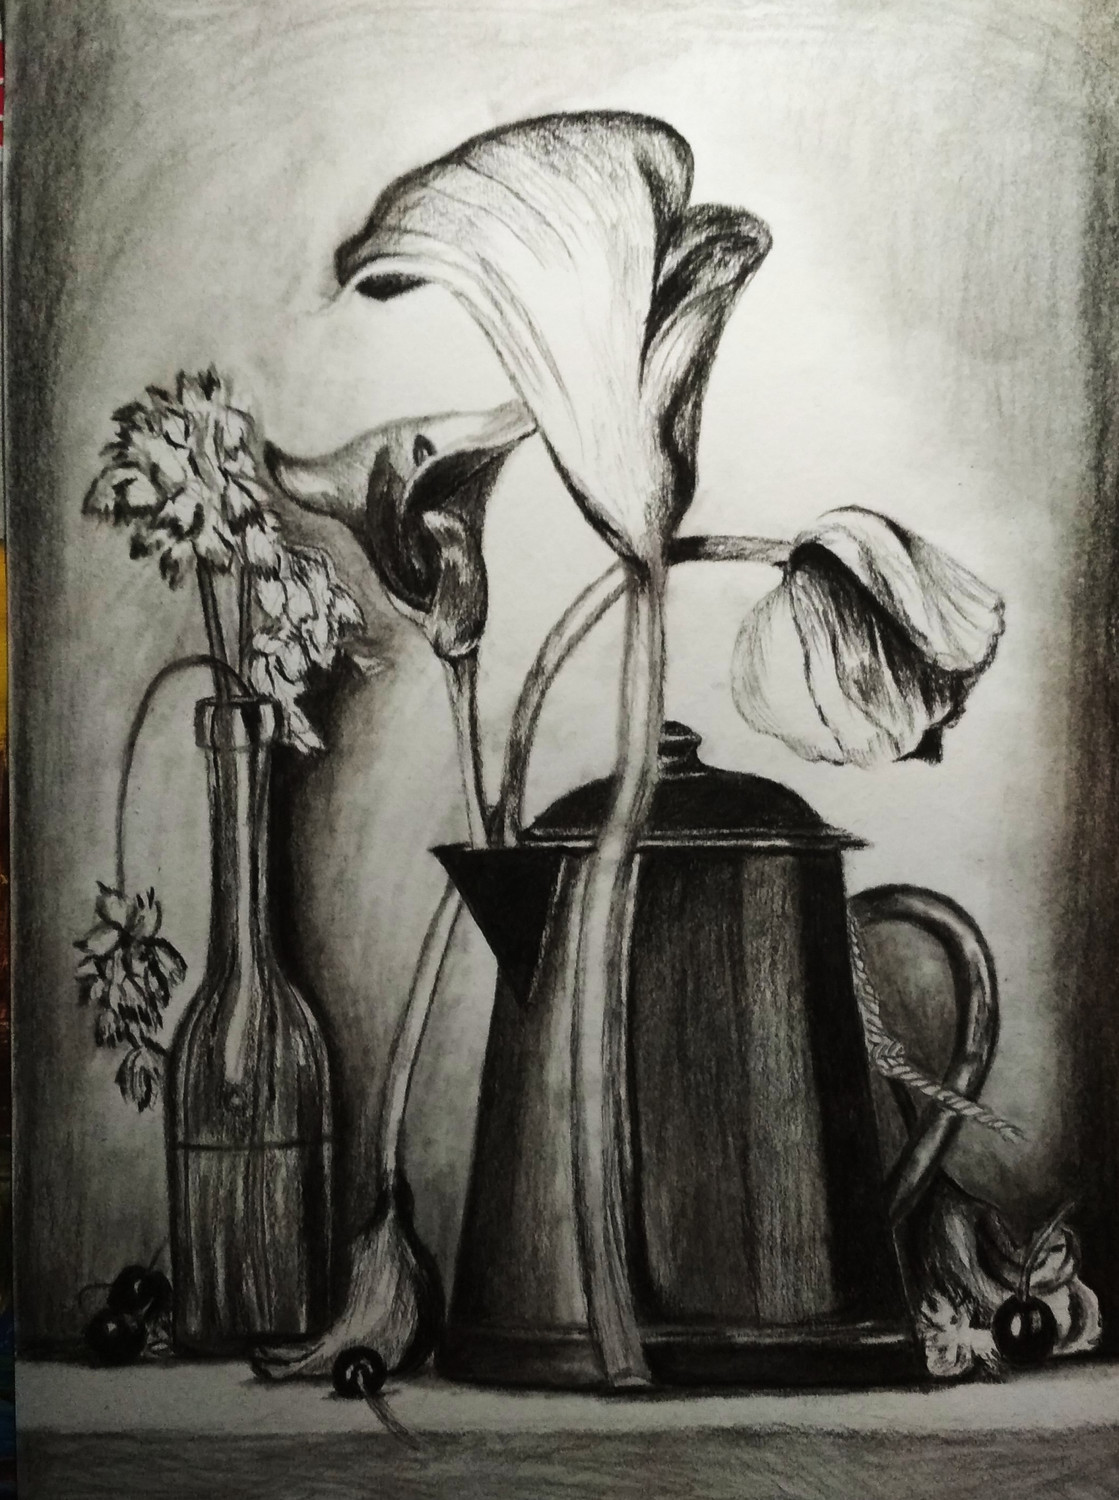 Tree Branch And Vase Still Life Pencil Drawing Signed Robert Ficarra Framed  | eBay